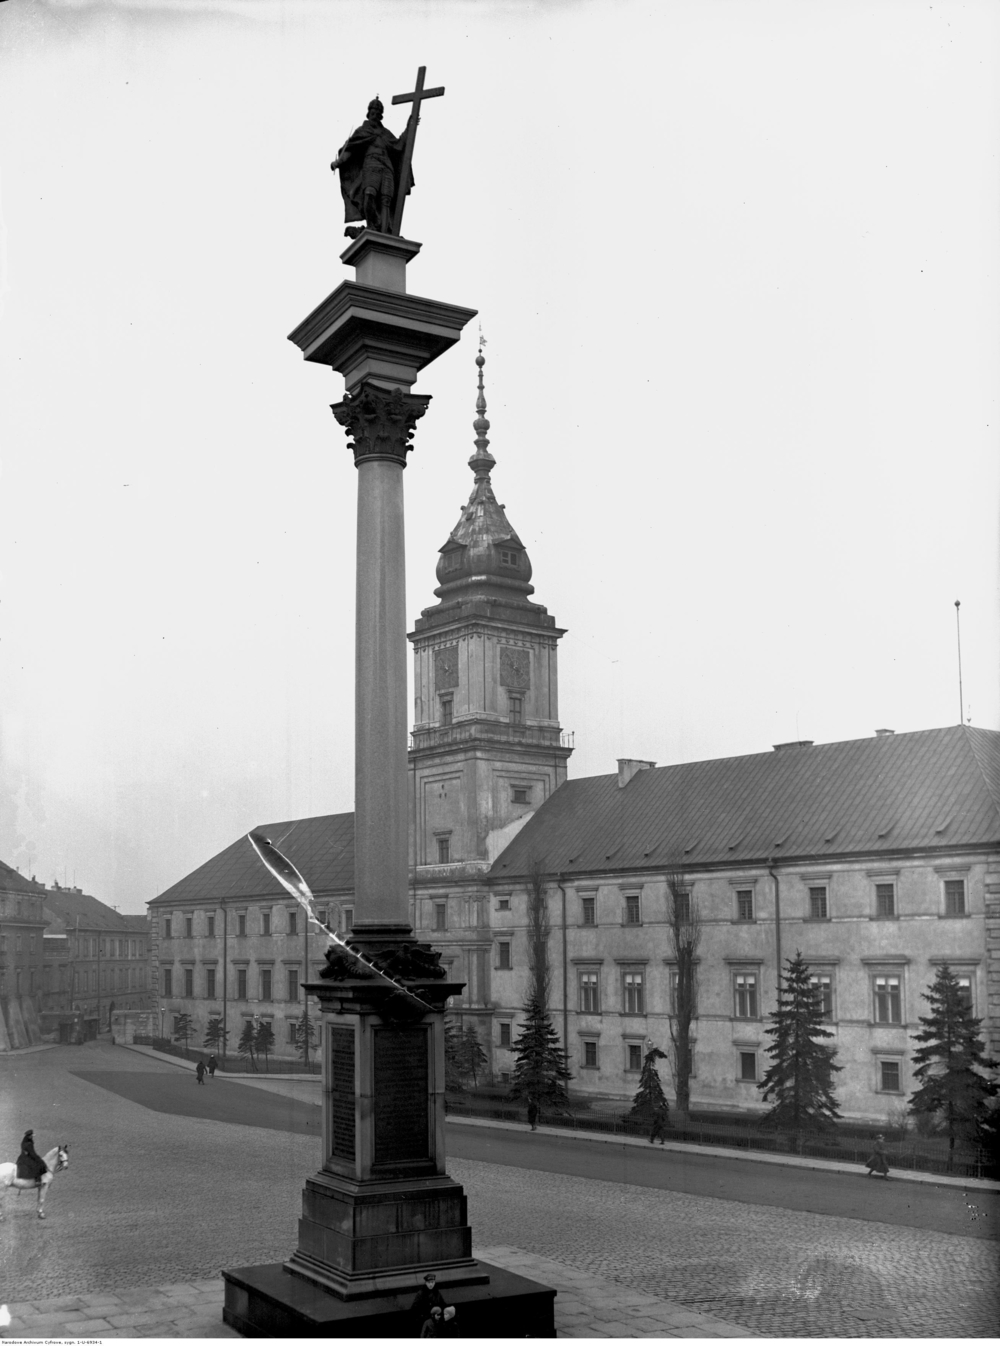 Zamek Królewski w Warszawie. Z przodu kolumna z rzeźbą króla Zygmunta III, a za nią budynek zamku z wieżą zegarową.